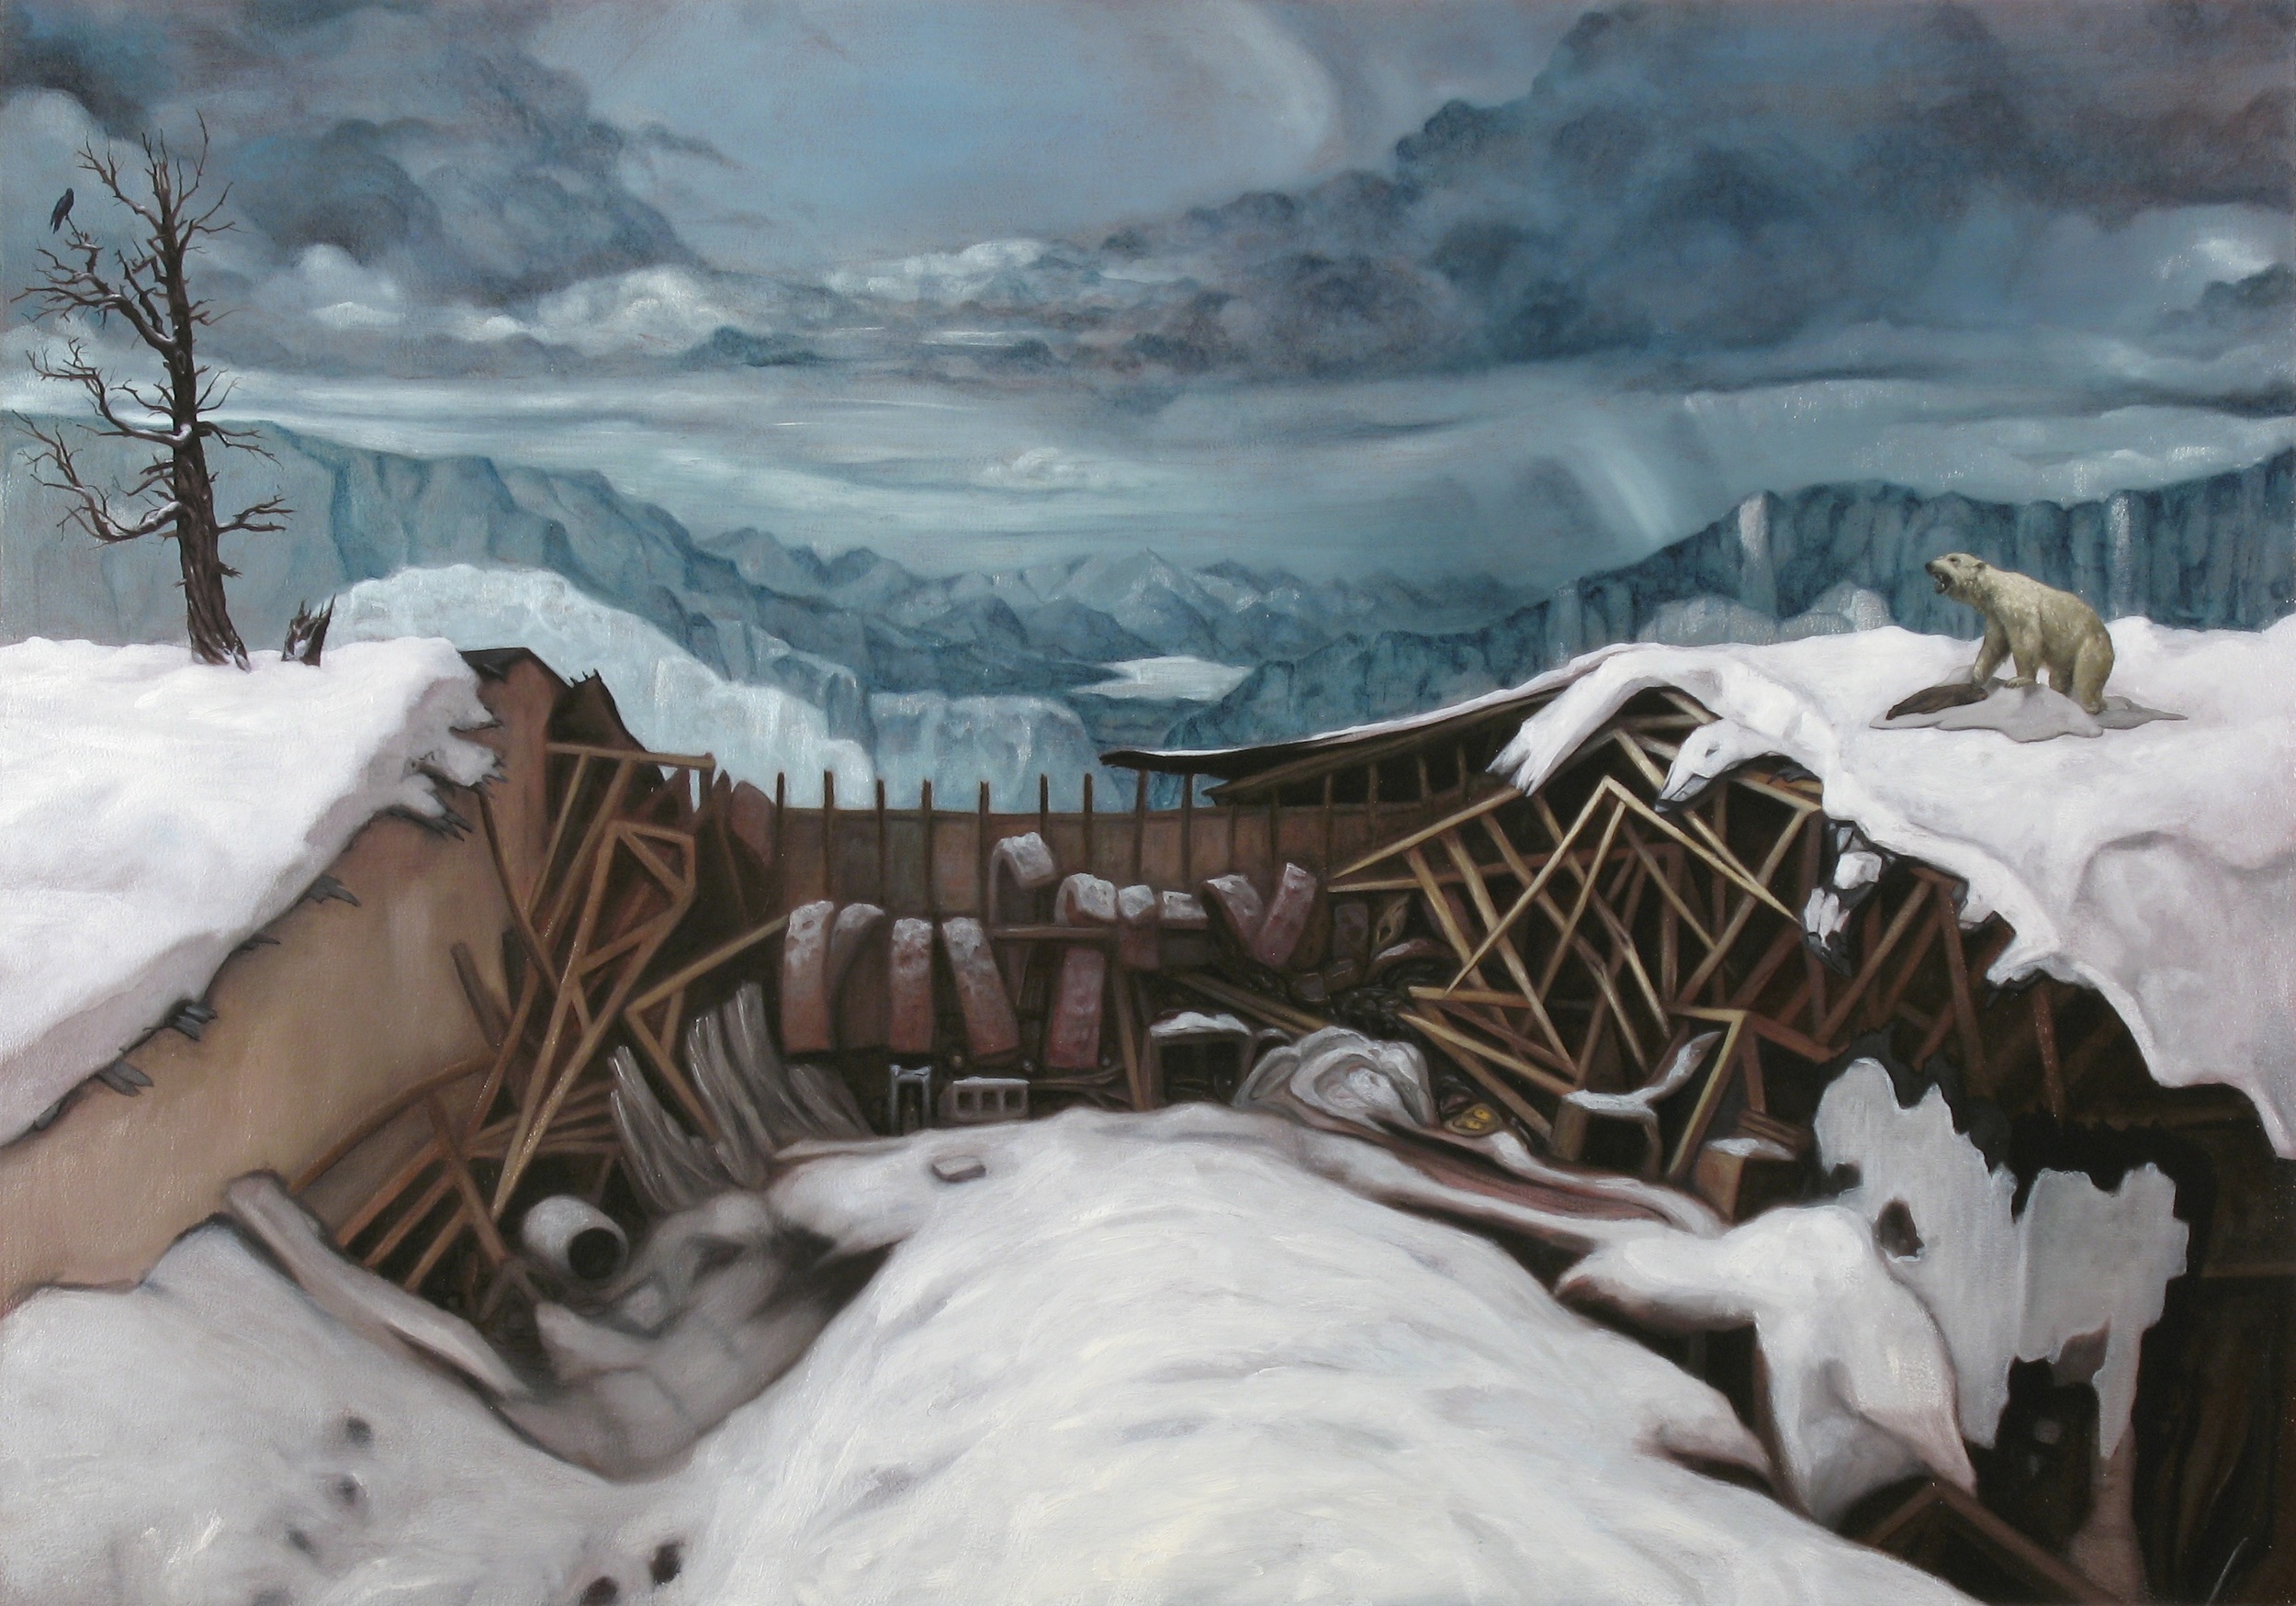 Snowfall, Oil on wood panel, 70x100cm, 2011